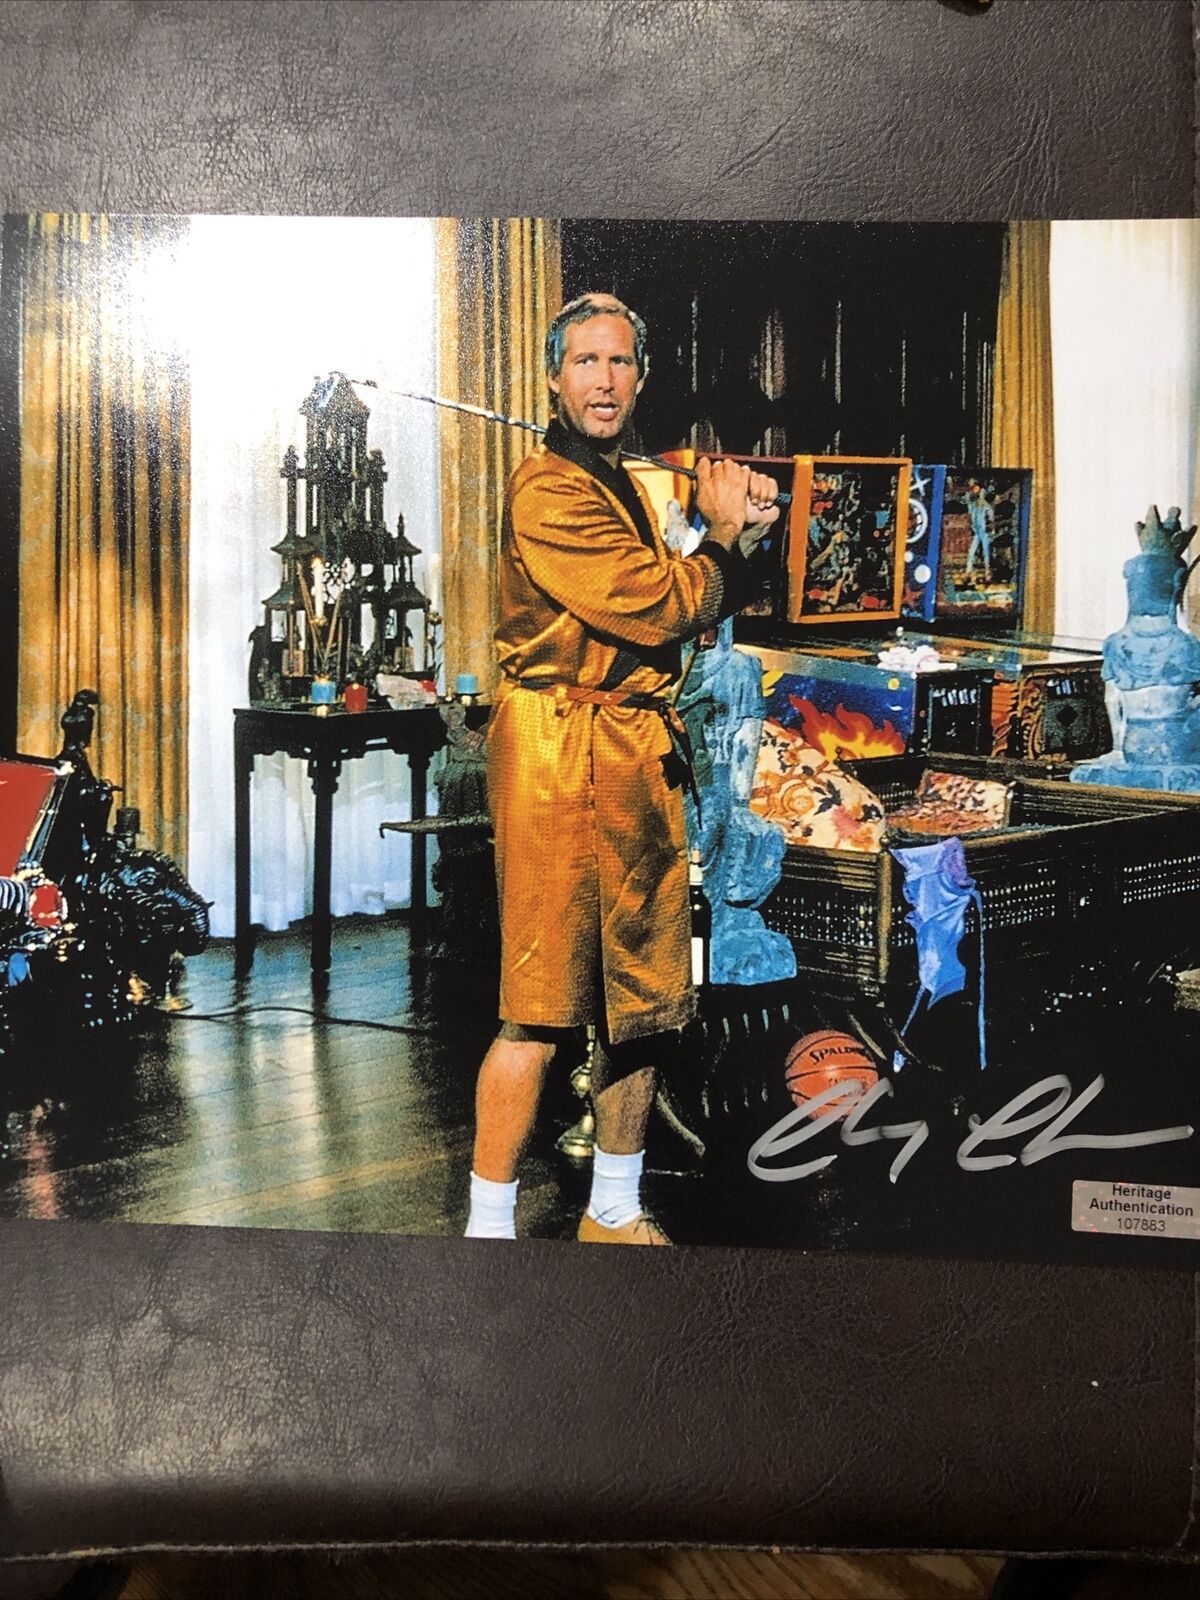 Chevy Chase Signed original 8x10 photo W COA Caddyshack 1980 movie